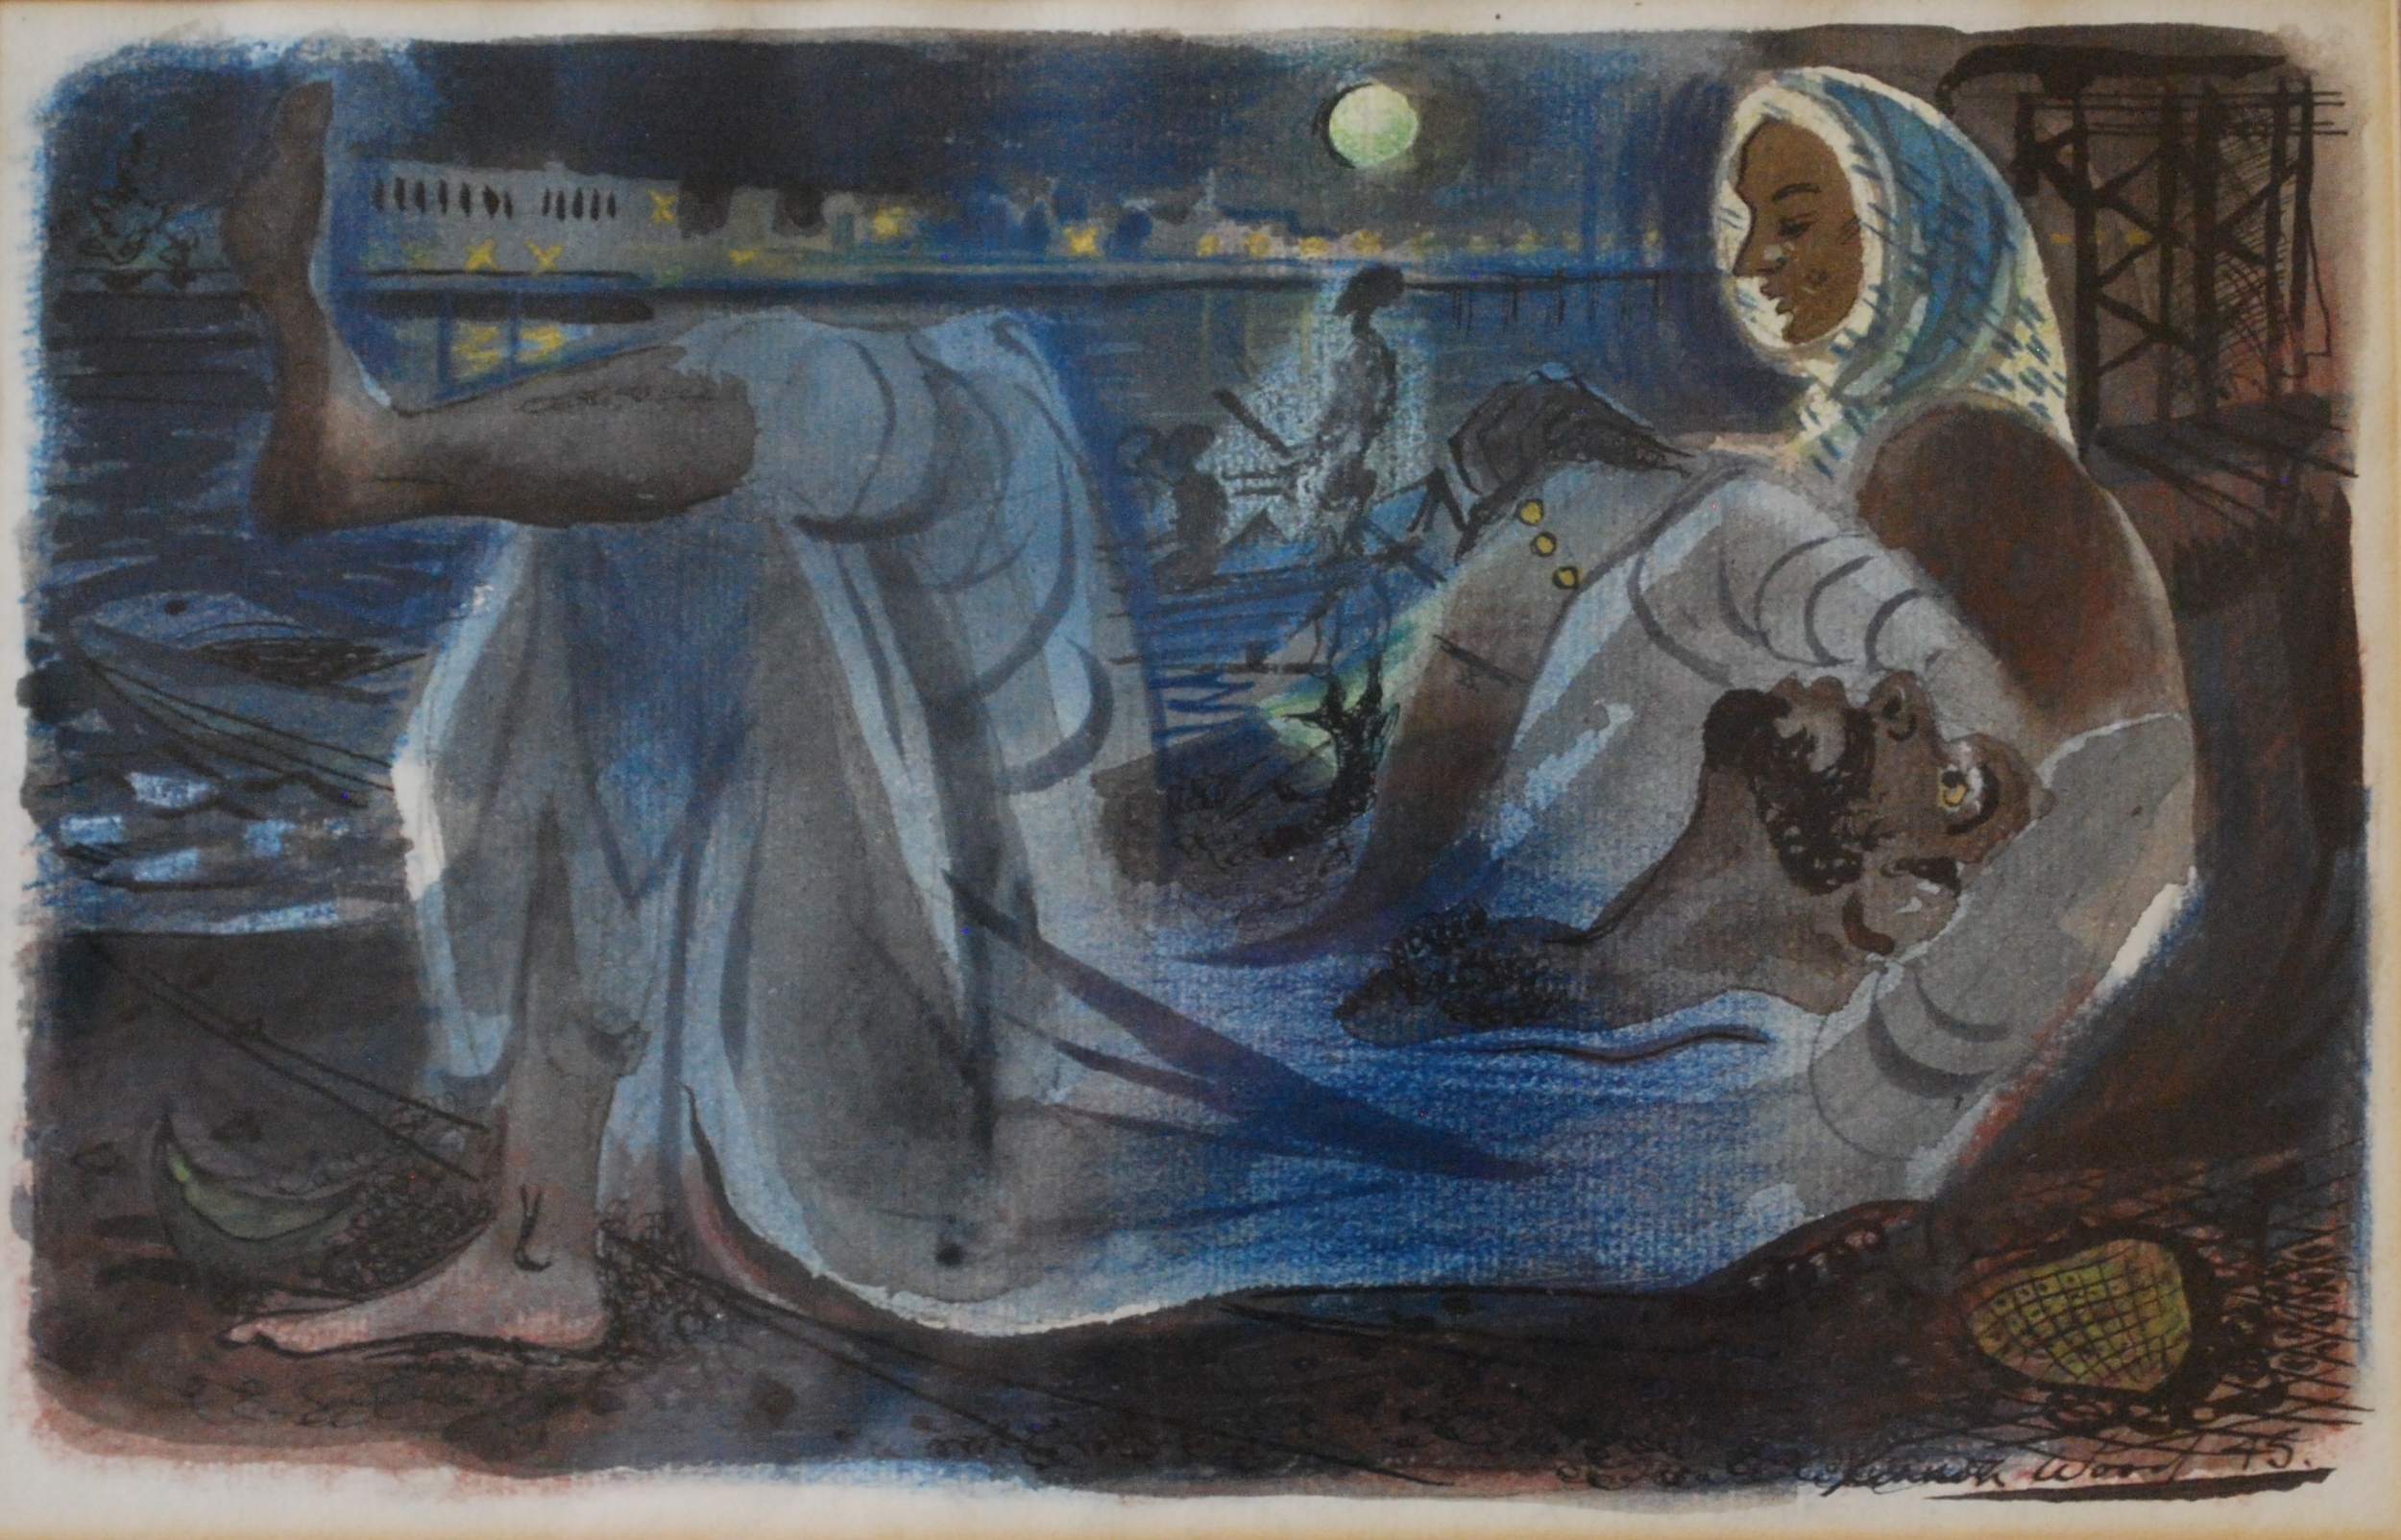  Reclining Arab Figure,1945 Watercolour &nbsp;26 x 16 cm 